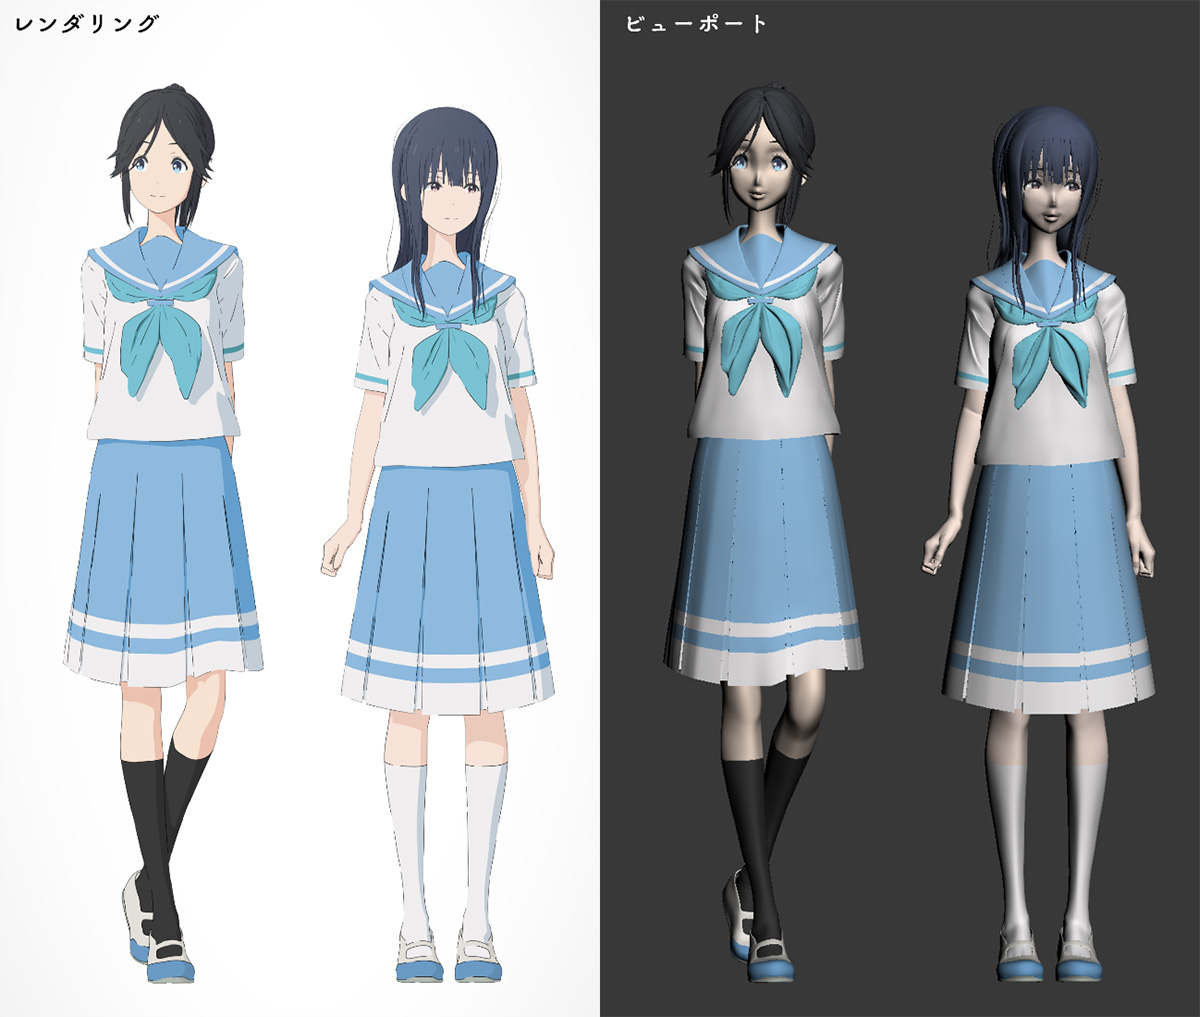 第1回 アニメモデリングの基本と準備 セルルックなキャラクターモデリング チュートリアル Area Japan